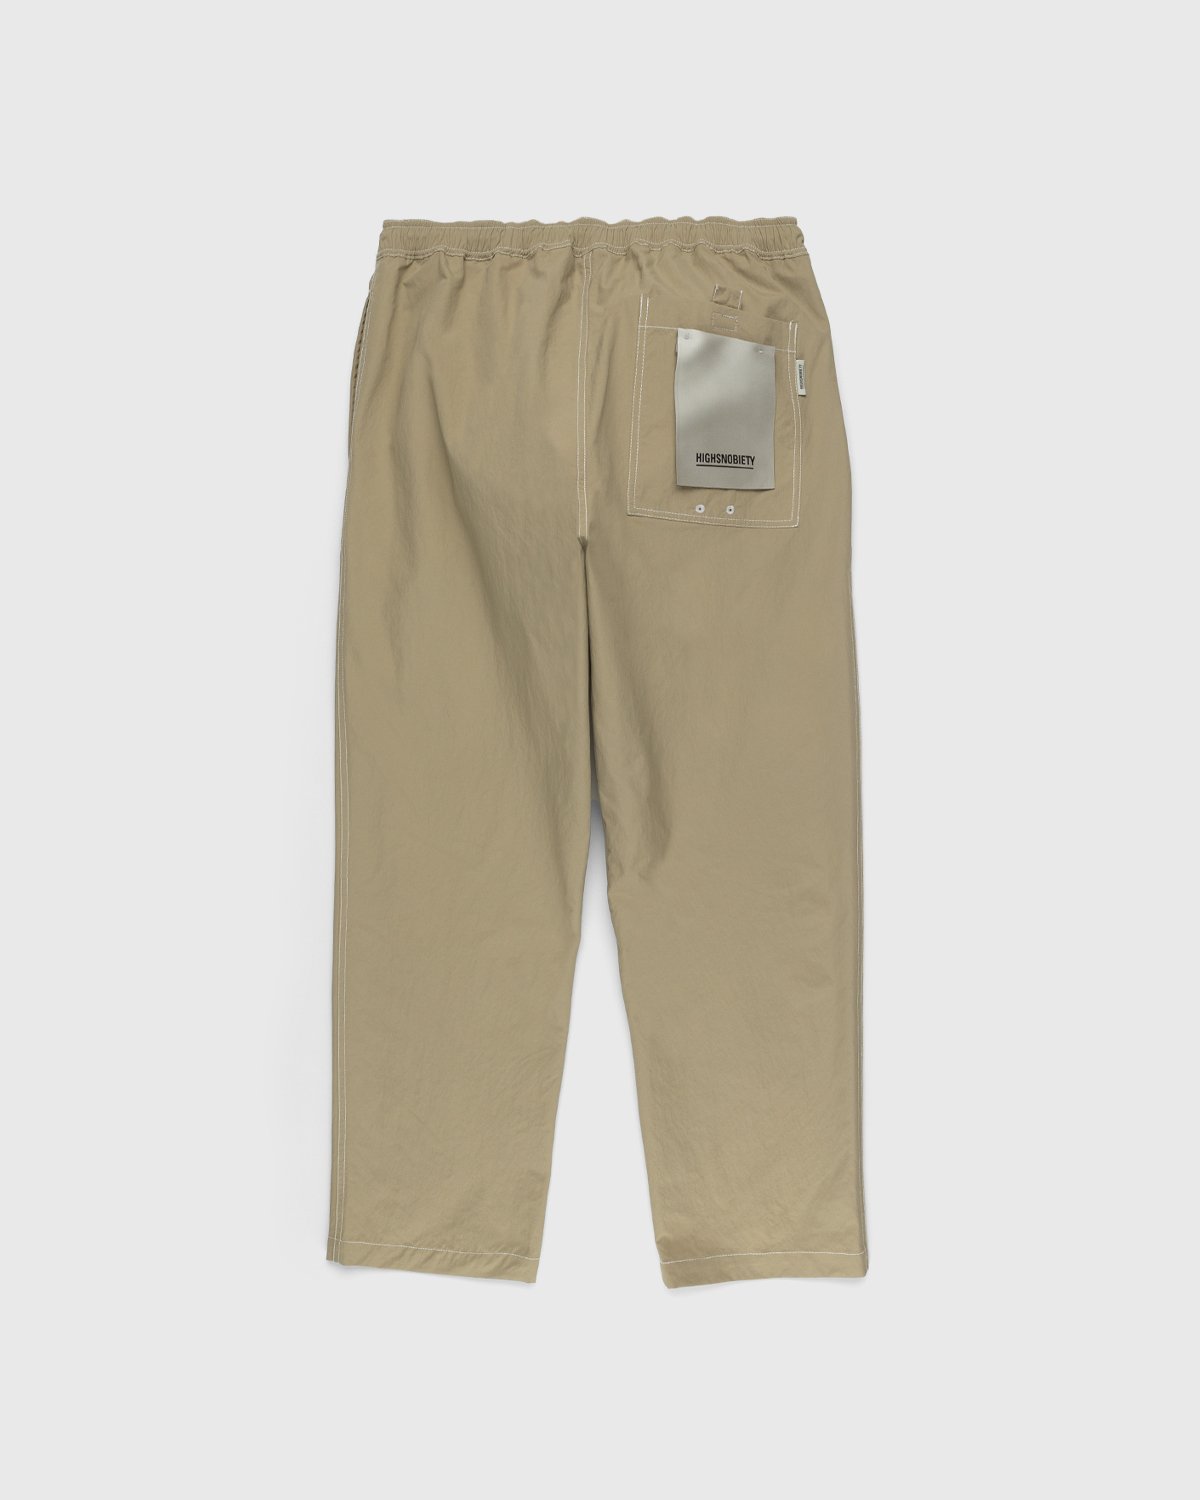 Highsnobiety - Contrast Brushed Nylon Elastic Pants Beige - Clothing - Beige - Image 2